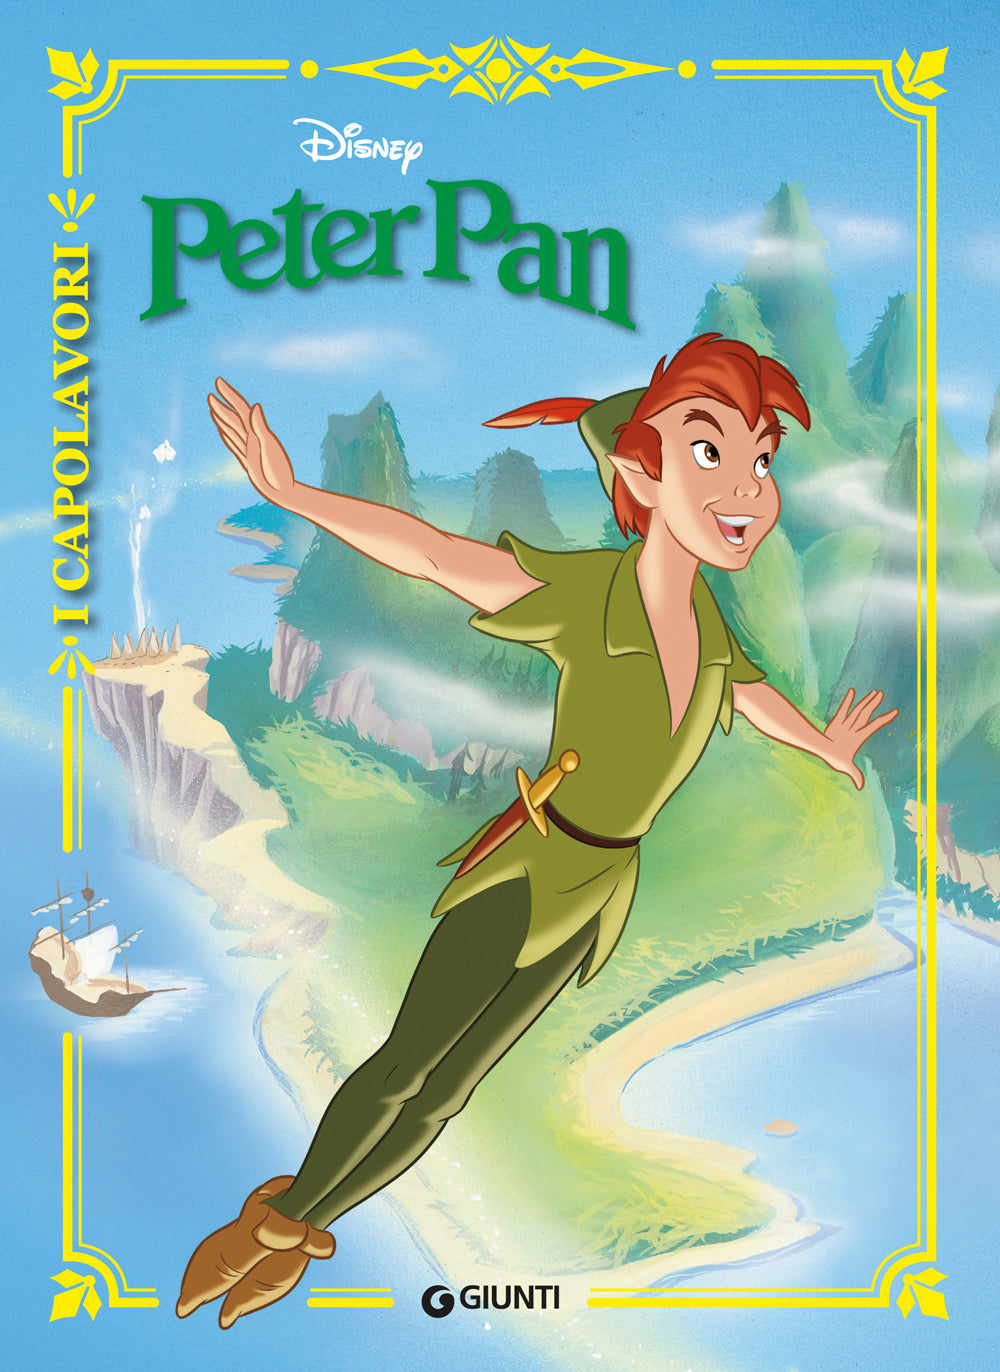 Peter Pan I grandi illustrati. Il meraviglioso viaggio verso  l'isola-che-non-c'è: libro di Walt Disney